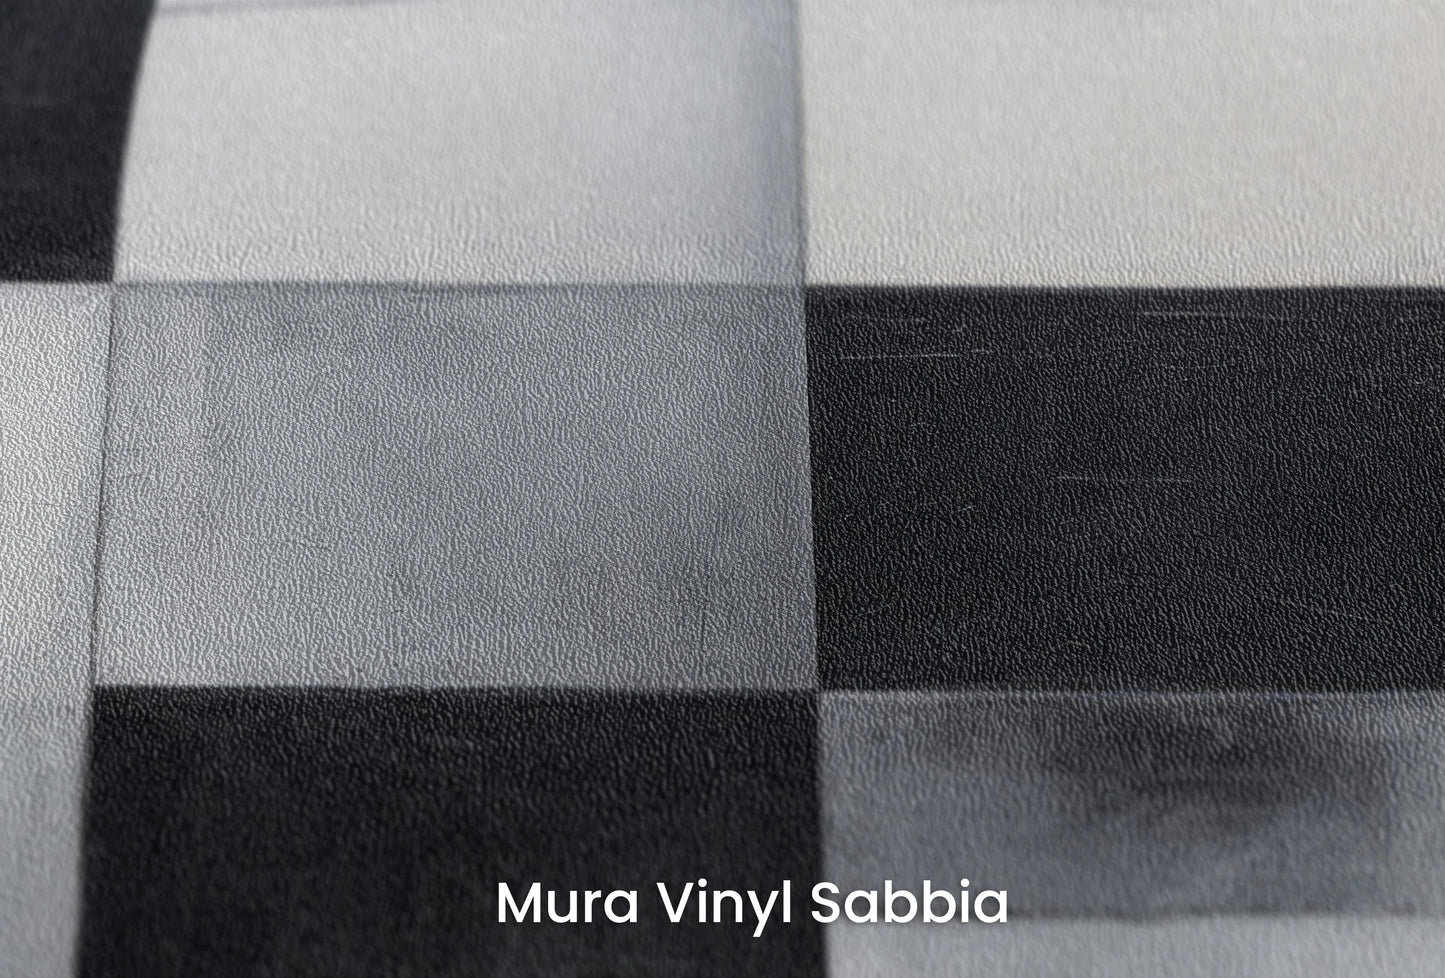 Zbliżenie na artystyczną fototapetę o nazwie Monochrome Crescent Intersection na podłożu Mura Vinyl Sabbia struktura grubego ziarna piasku.